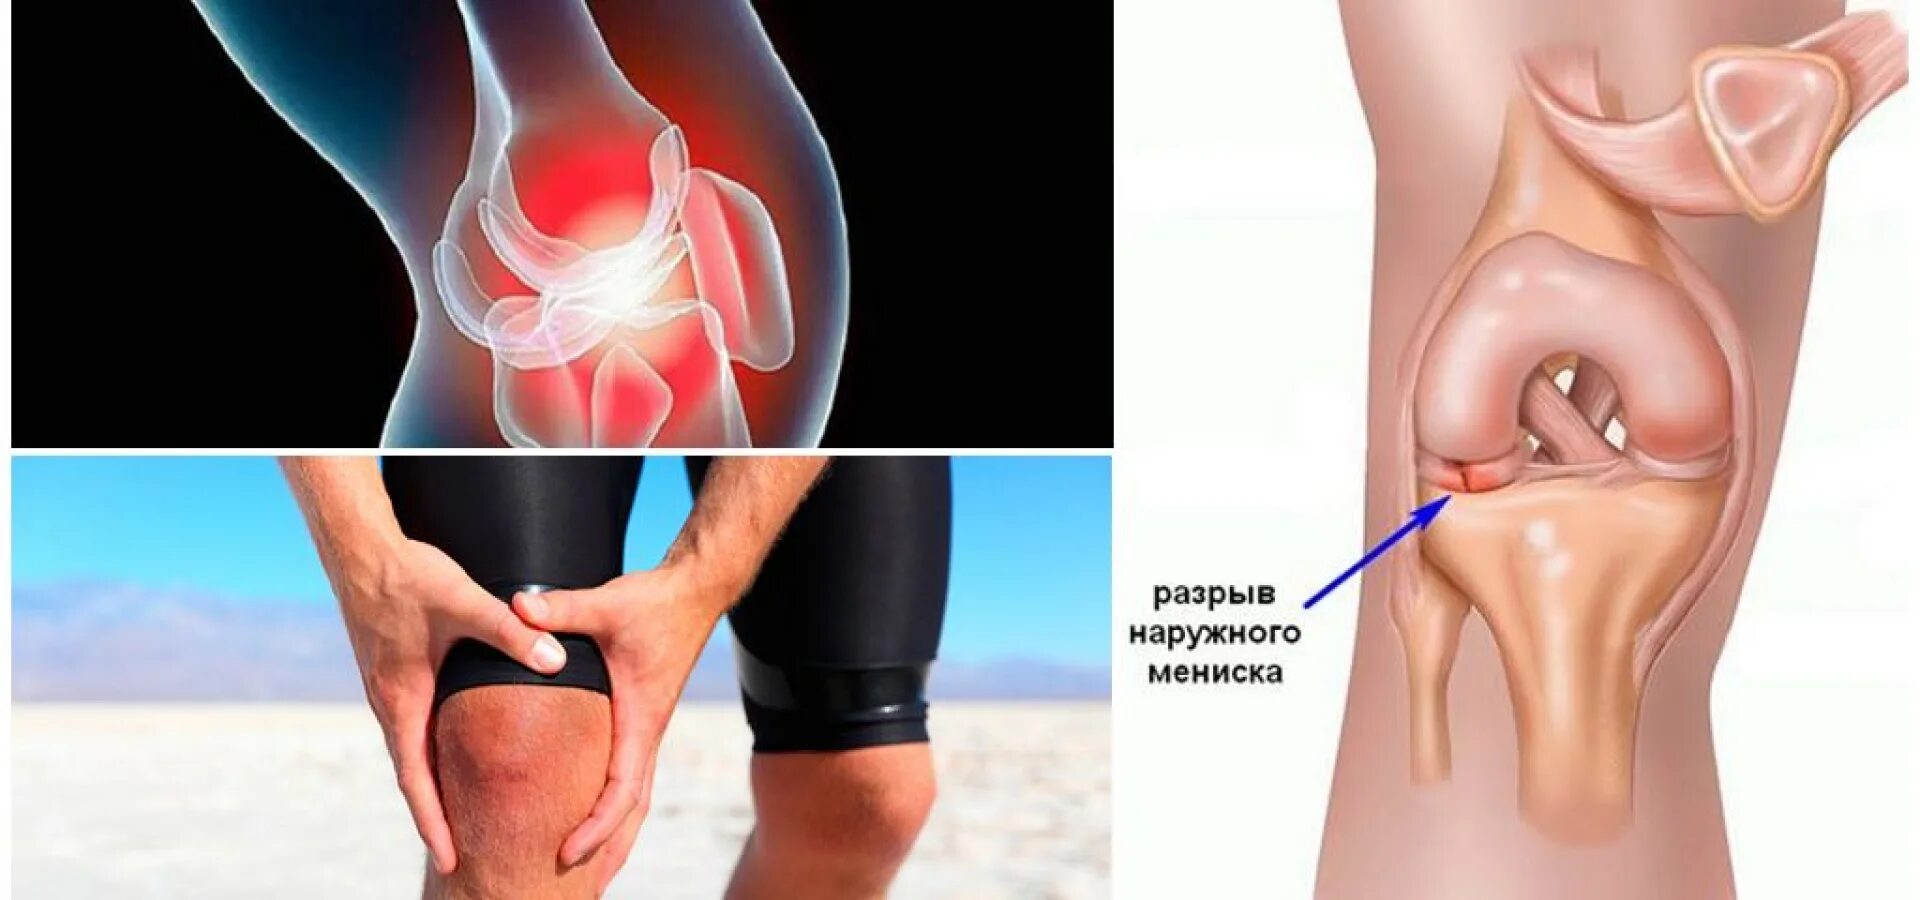 Повреждение коленного сустава 3 степени. Разрыв мениска коленного. Разрыв мениска коленного сустава. Разрыв коленого сустава Менис. Менископатия коленного сустава.